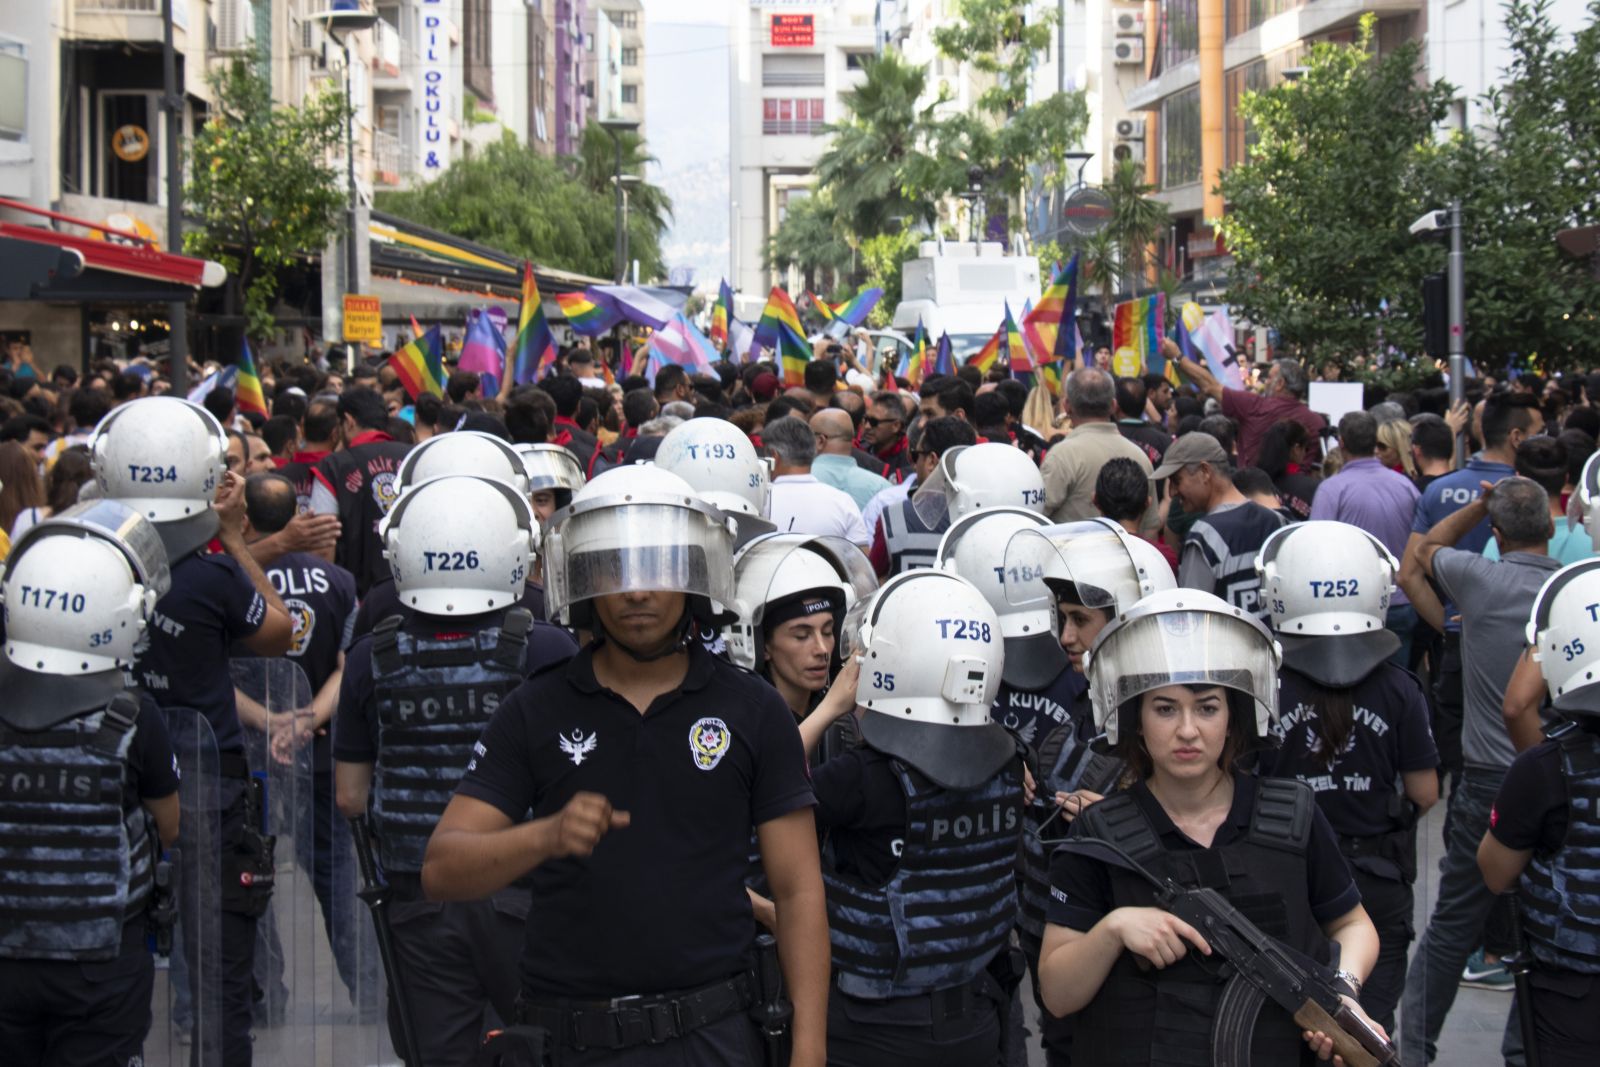 Polisten saldırıya uğrayan trans kadınlara: “Seni korumak zorunda değilim!” | Kaos GL - LGBTİ+ Haber Portalı Haber